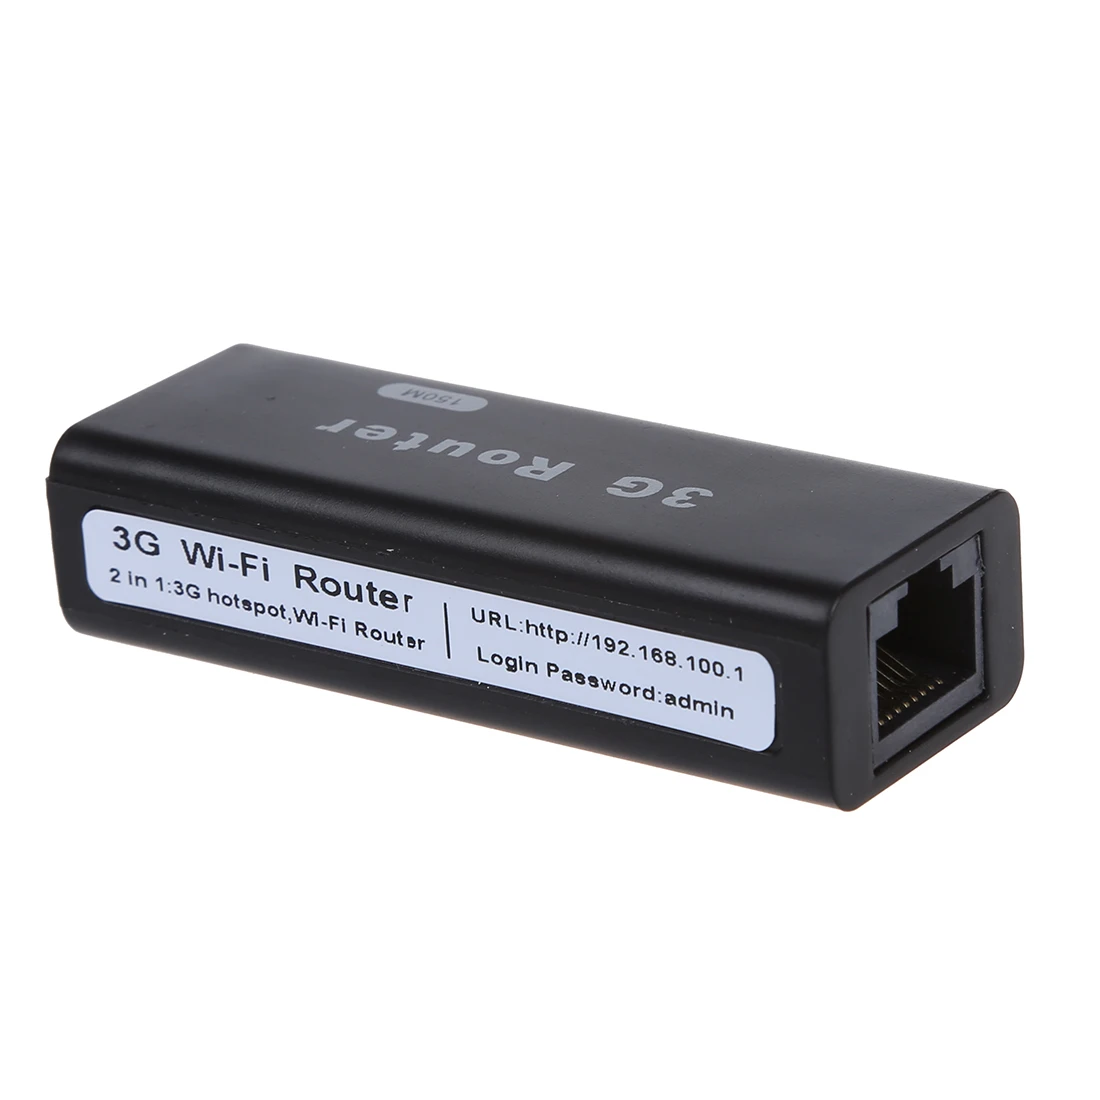 2 в 1 A15 мини-маленький Беспроводной маршрутизатор 3g/Wi-Fi IEEE802.11b/g/n до 150 Мбит/с 3g Hotspot UBlack Совместимость с HSDPA/HSUPA